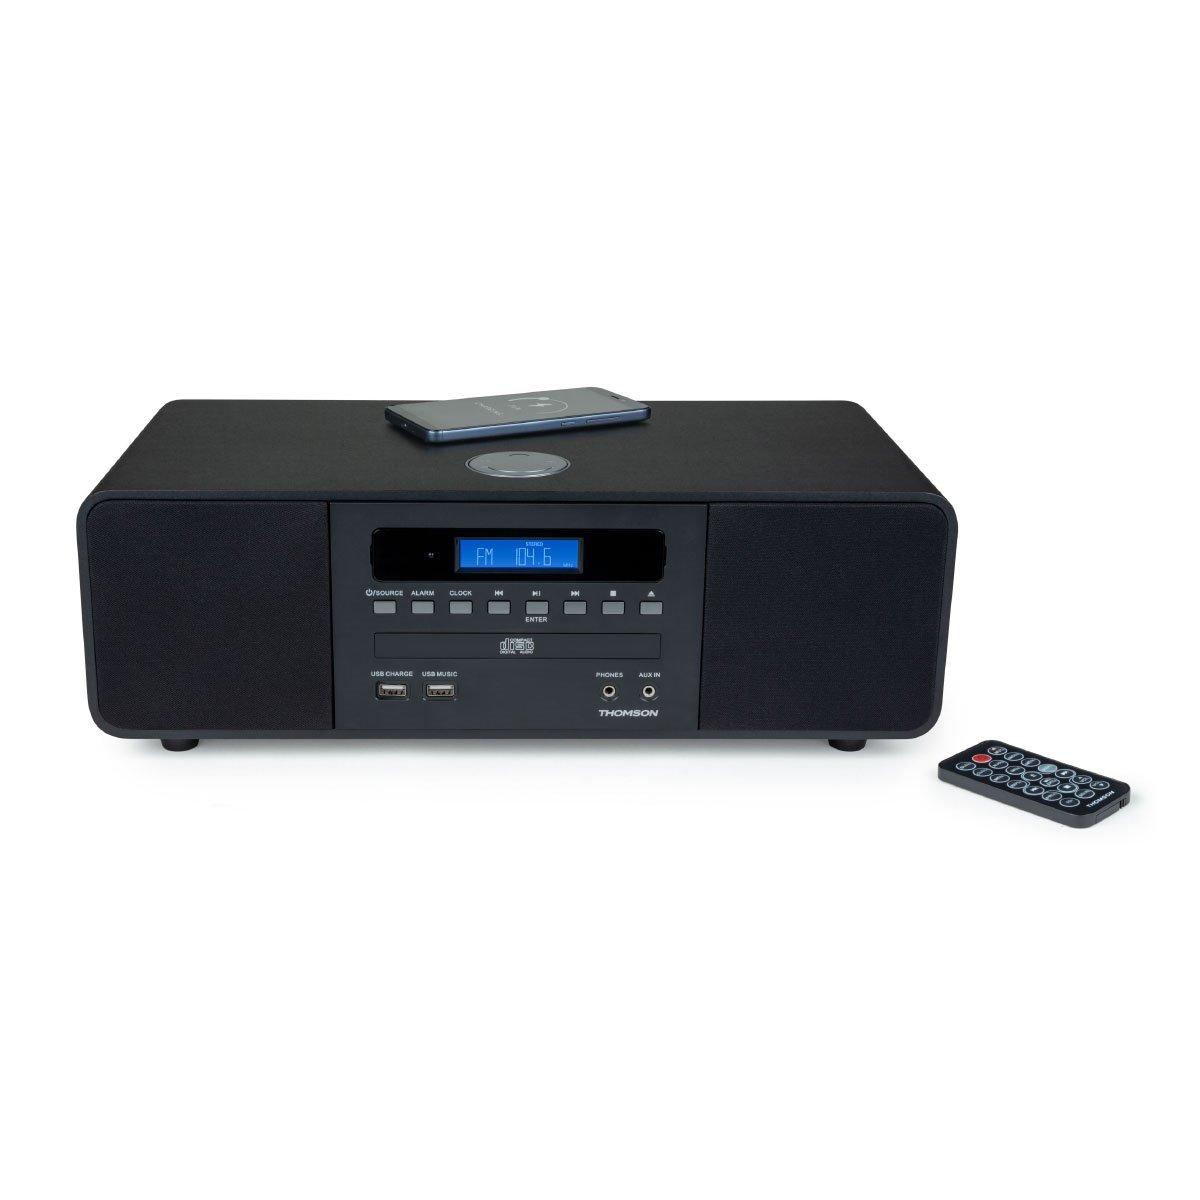 Las mejores ofertas en Reproductor de audio Sony Muelles y mini altavoces